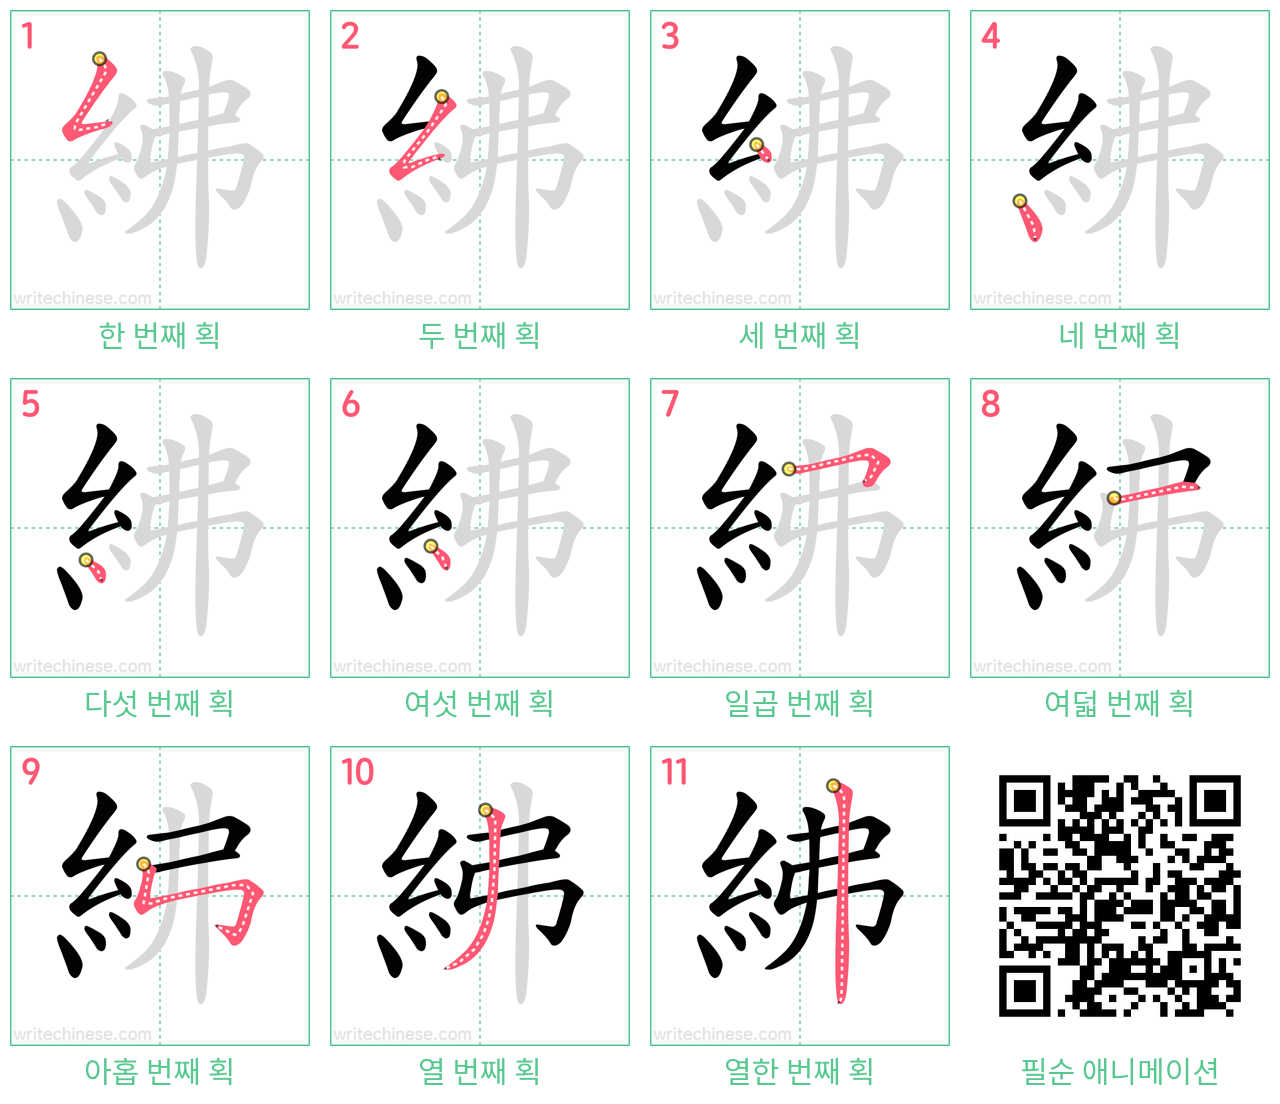 紼 step-by-step stroke order diagrams